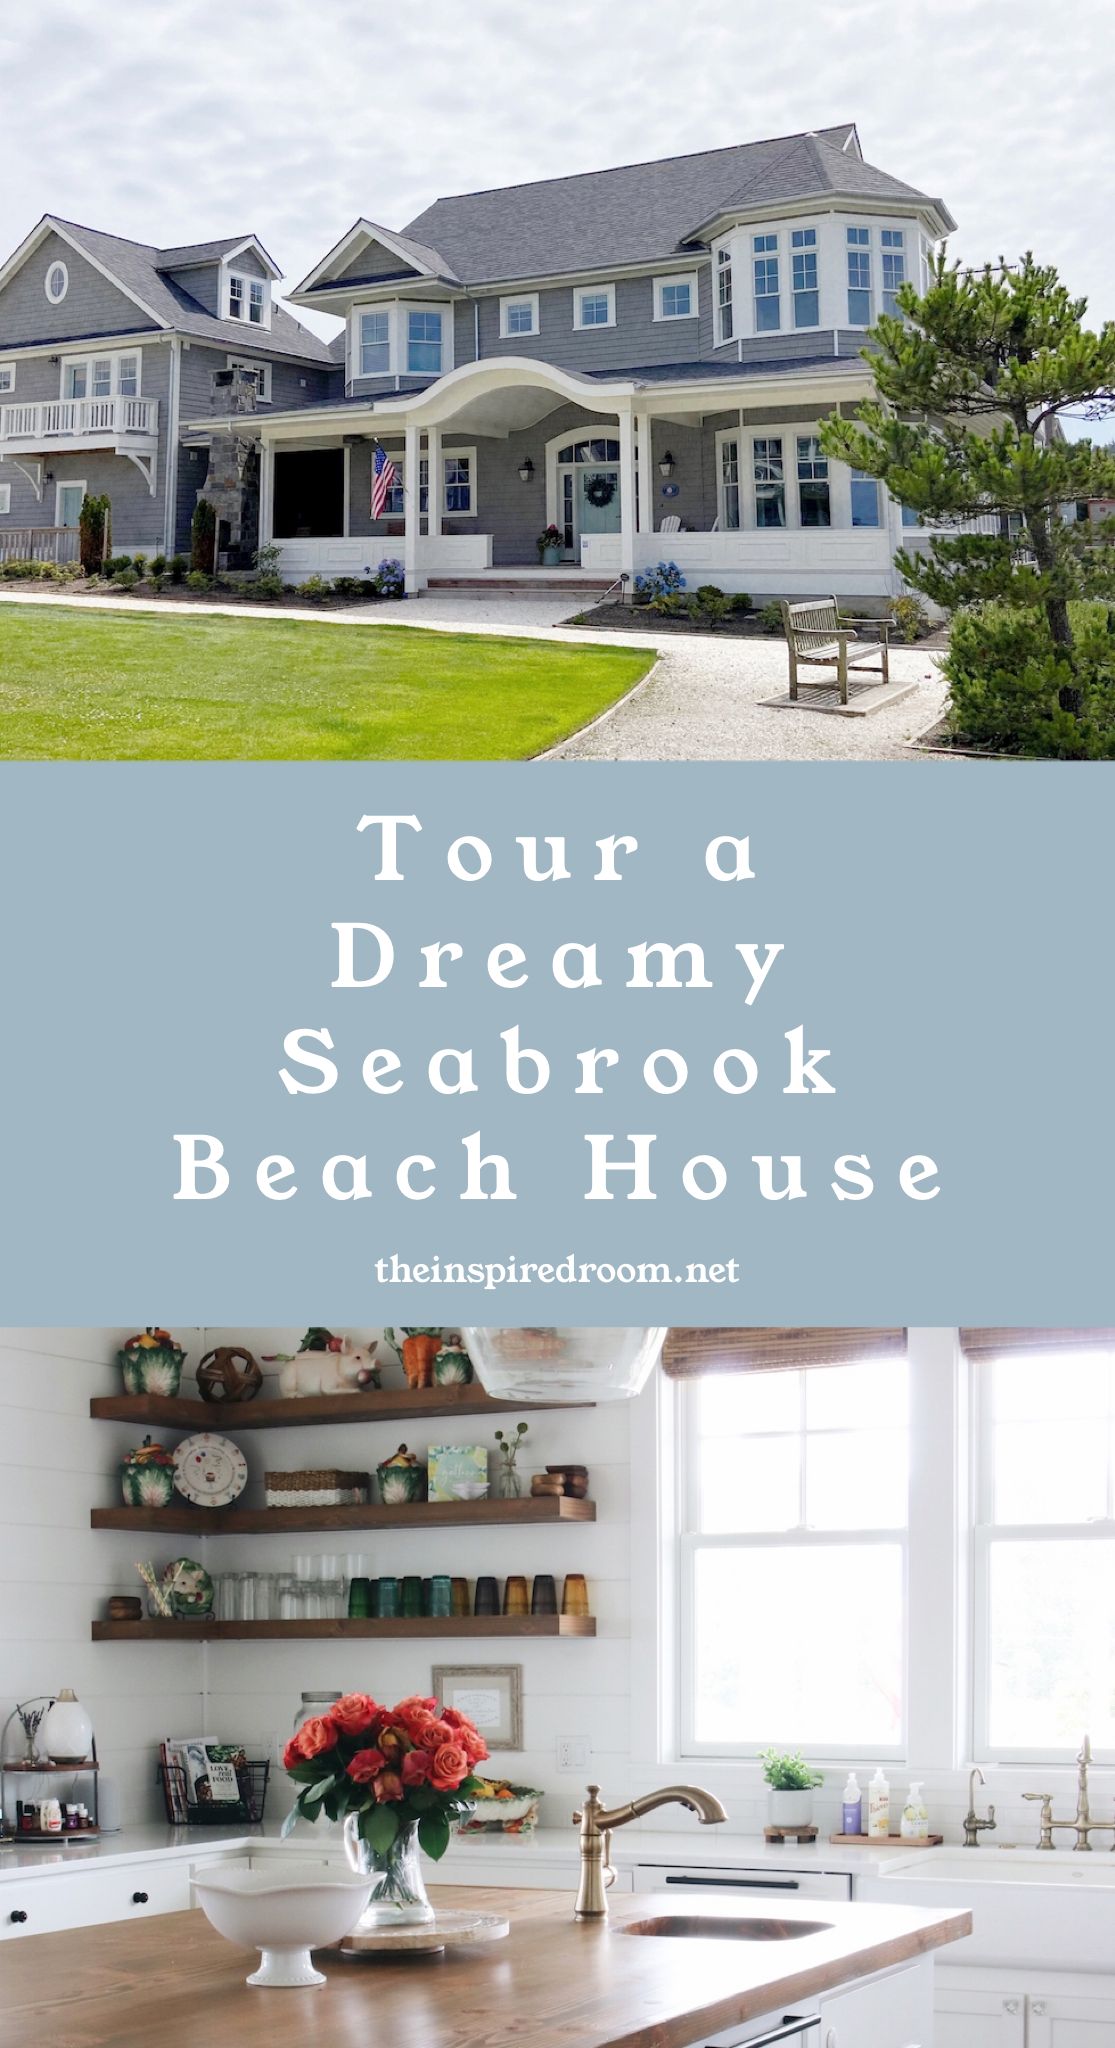 Come Take a Video Tour of a Dream Beach House!